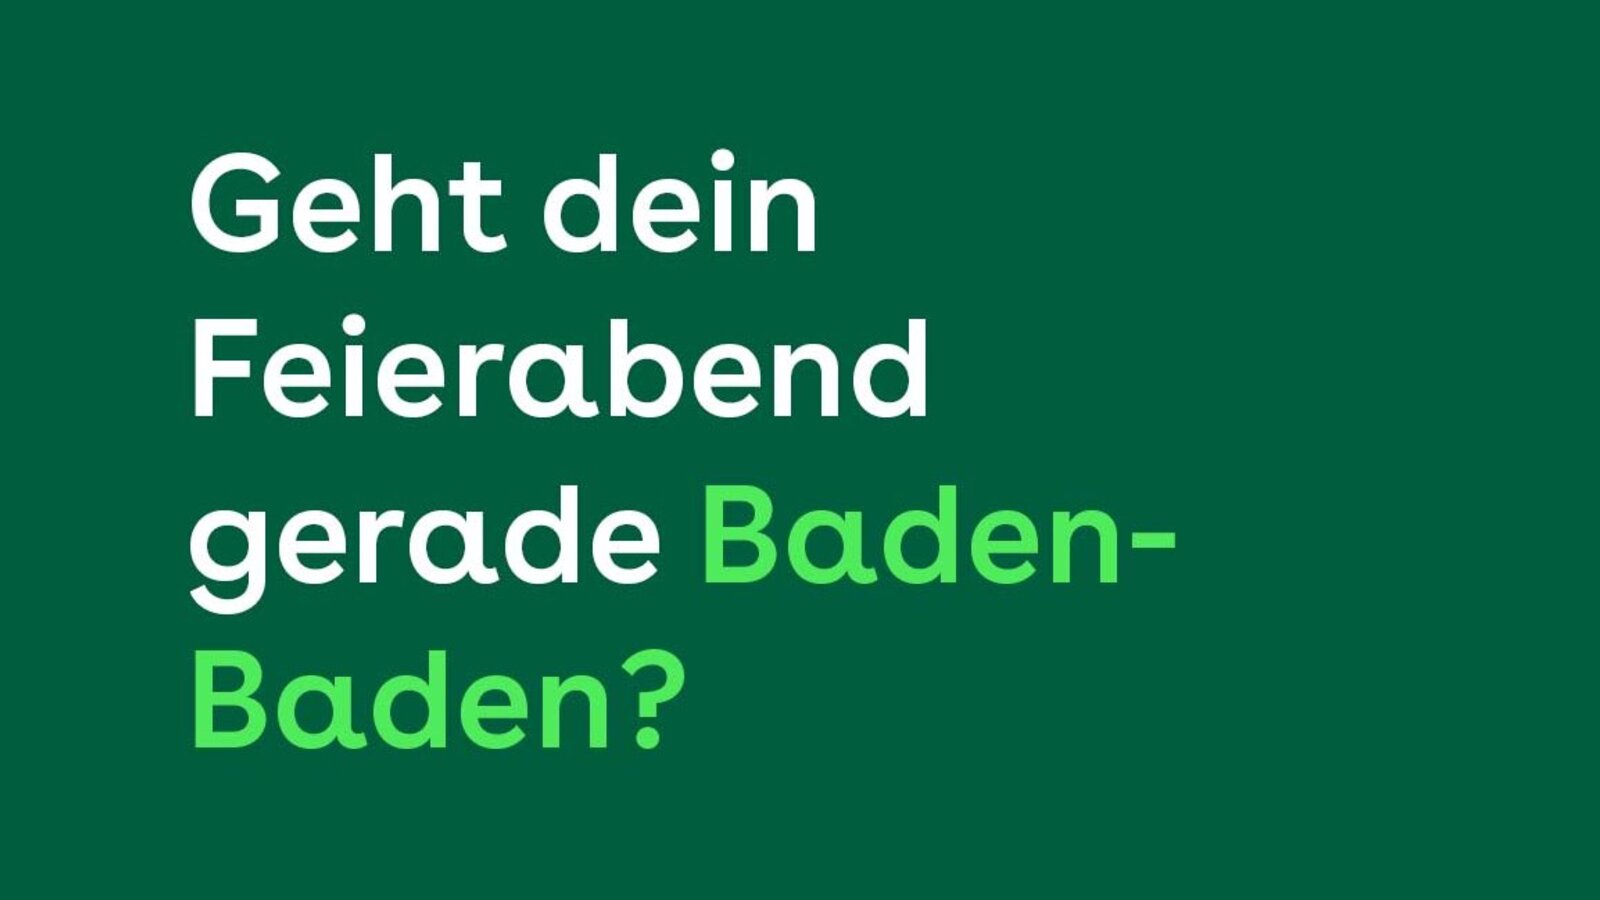 Geht dein Feierabend gerade Baden-Baden?